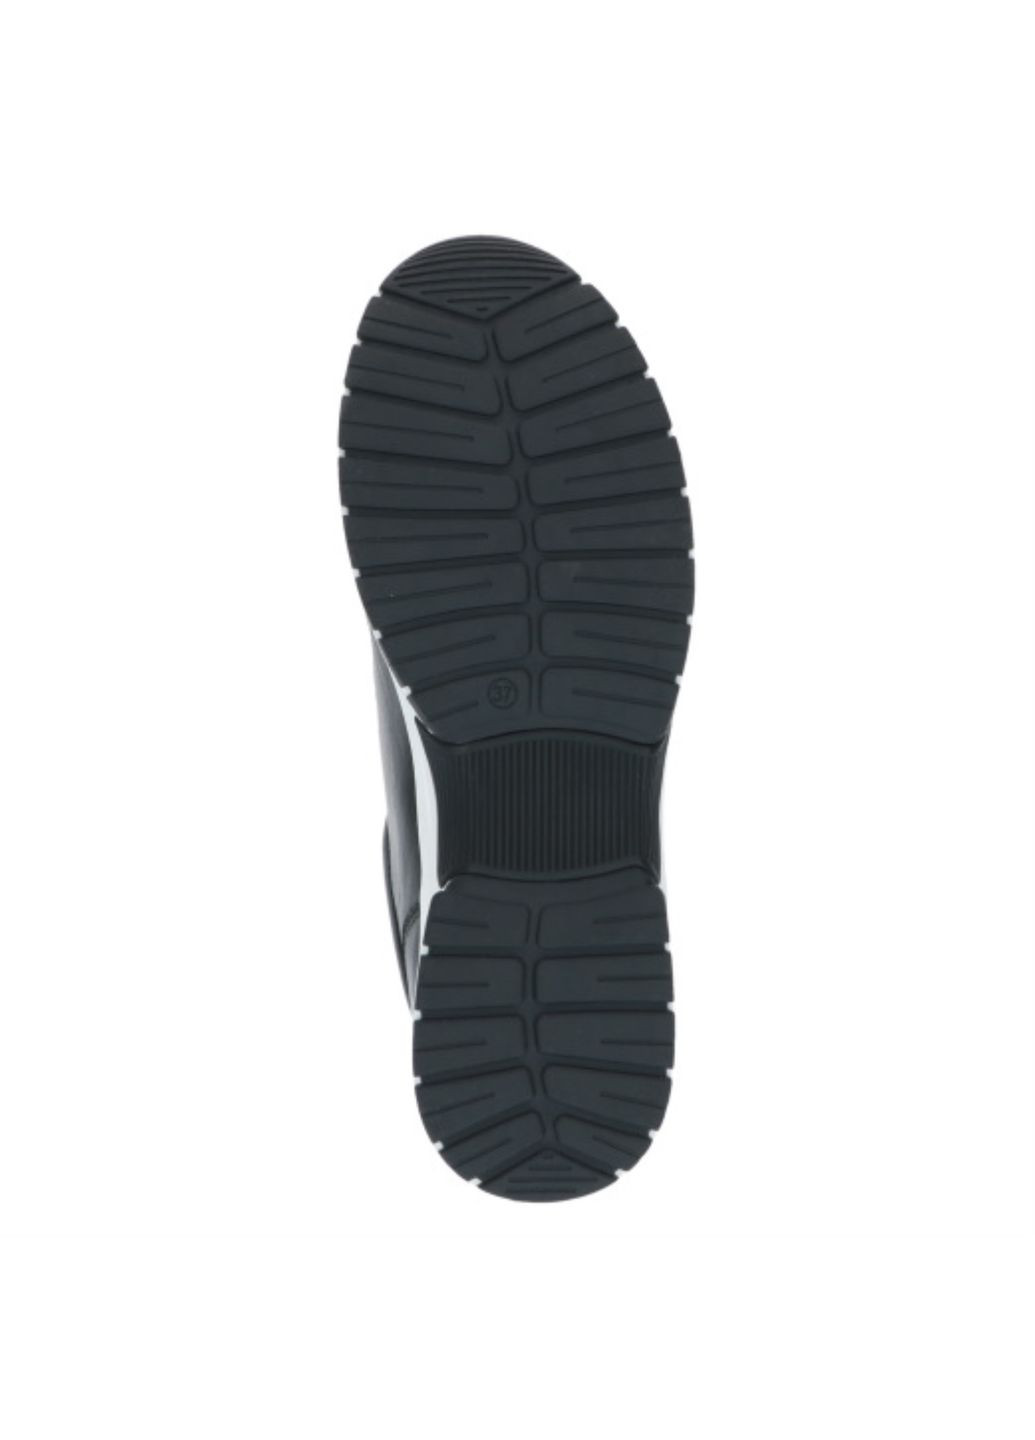 Черные кроссовки (р) кожа 0-1-1-9-23755-41-040 Caprice